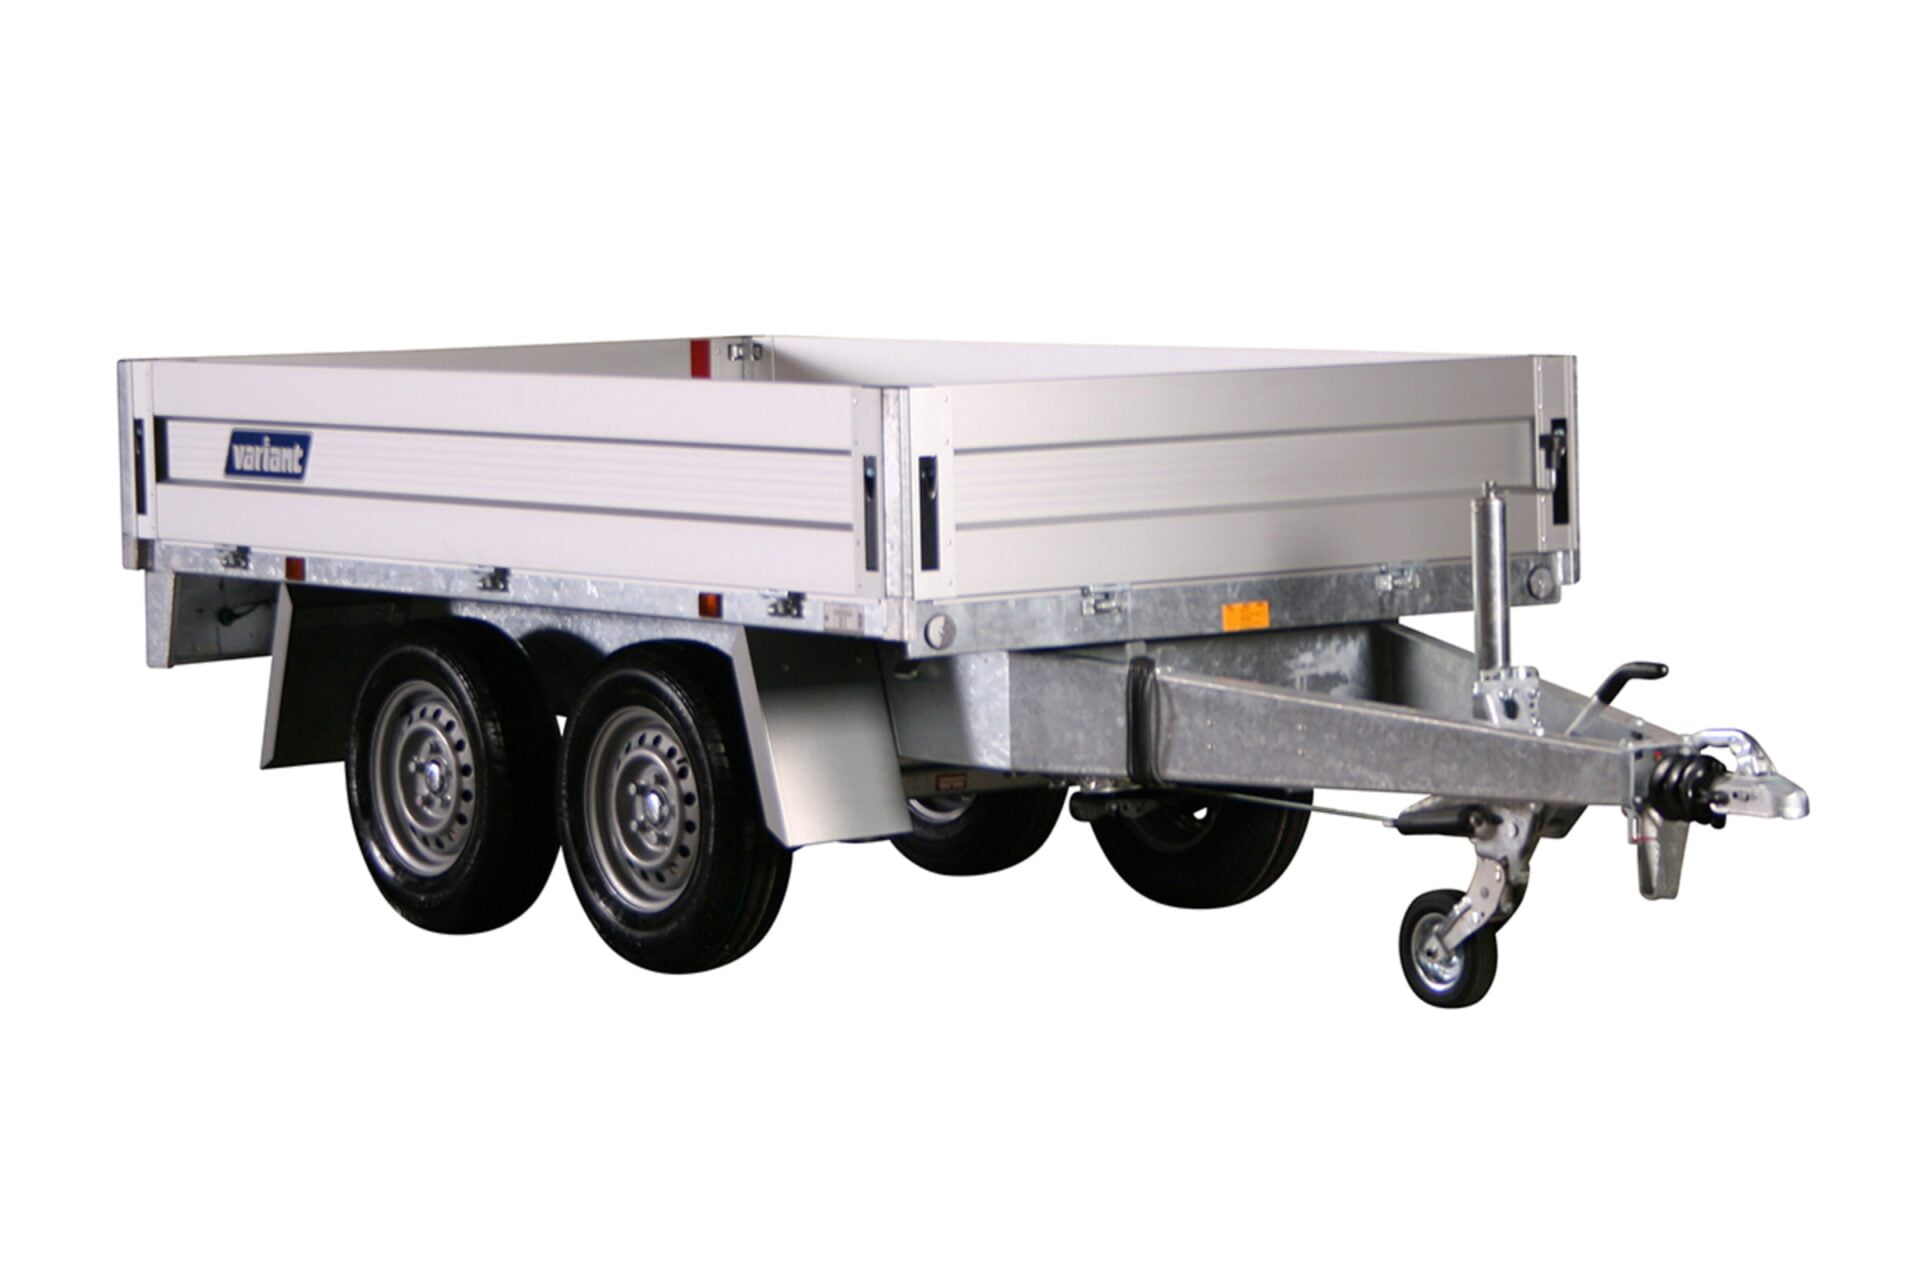 1 way hydraulic tipper trailer